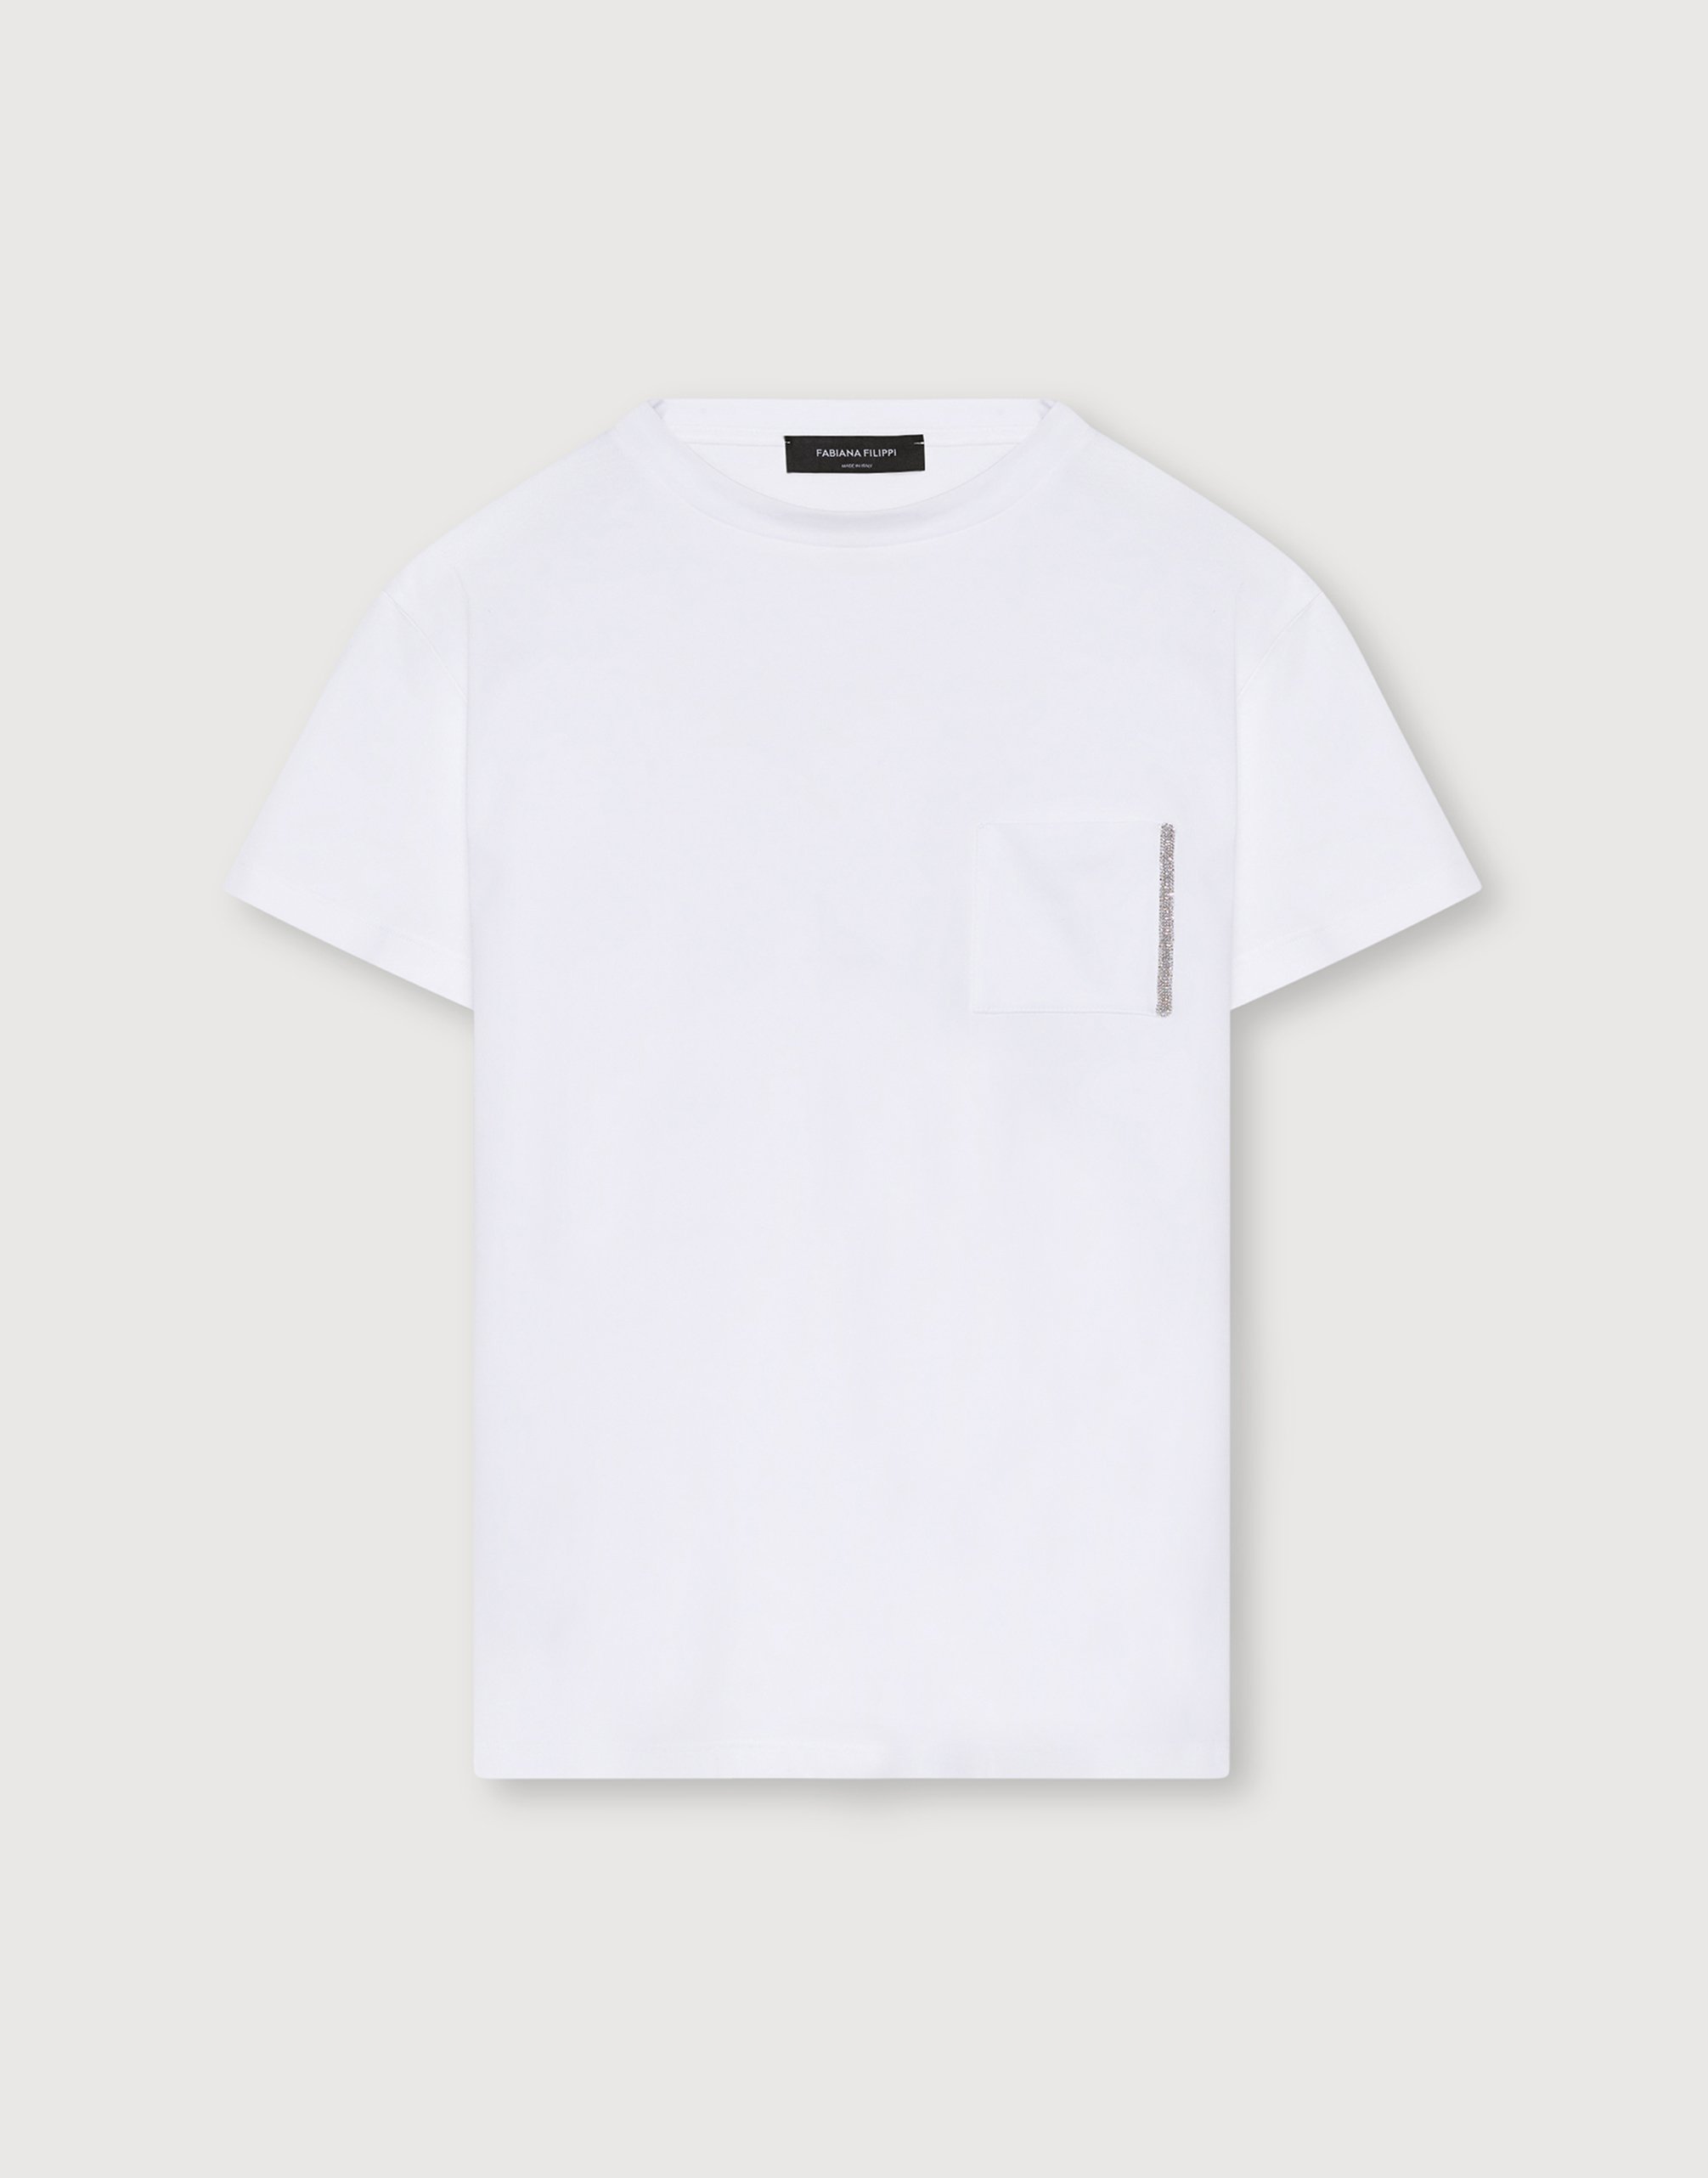 レディースオーガニックコットンジャージーTシャツ, ホワイト Tシャツ